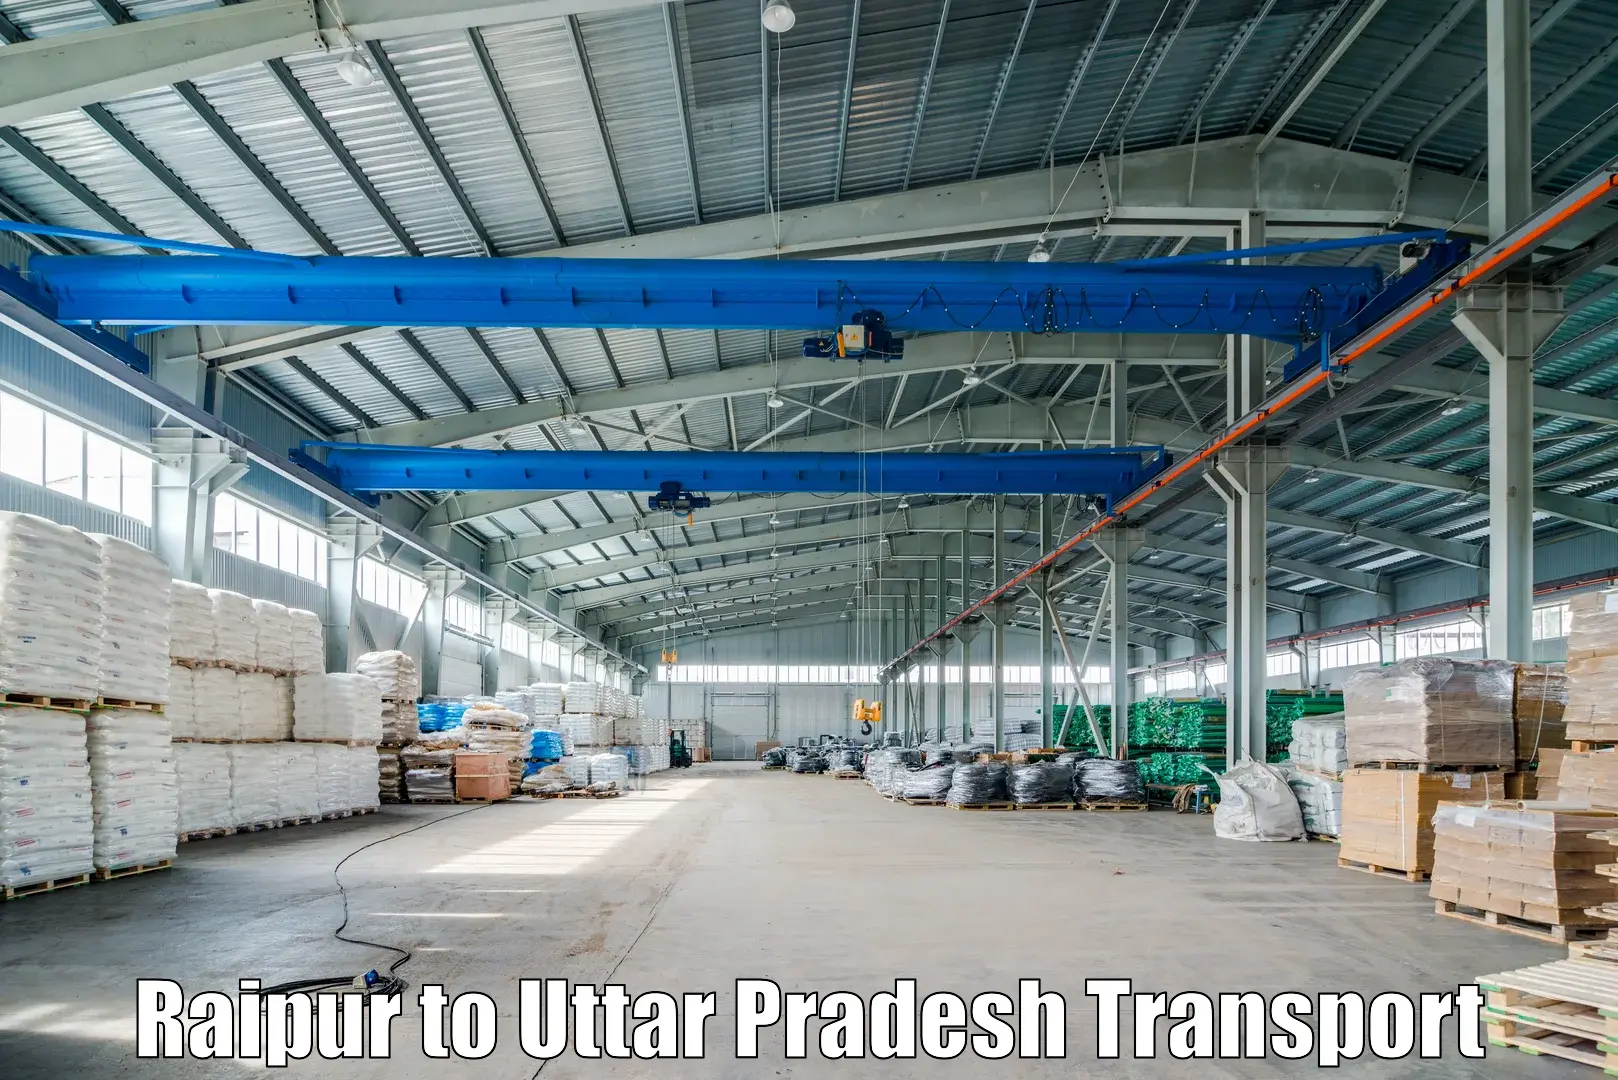 Truck transport companies in India Raipur to Aunrihar